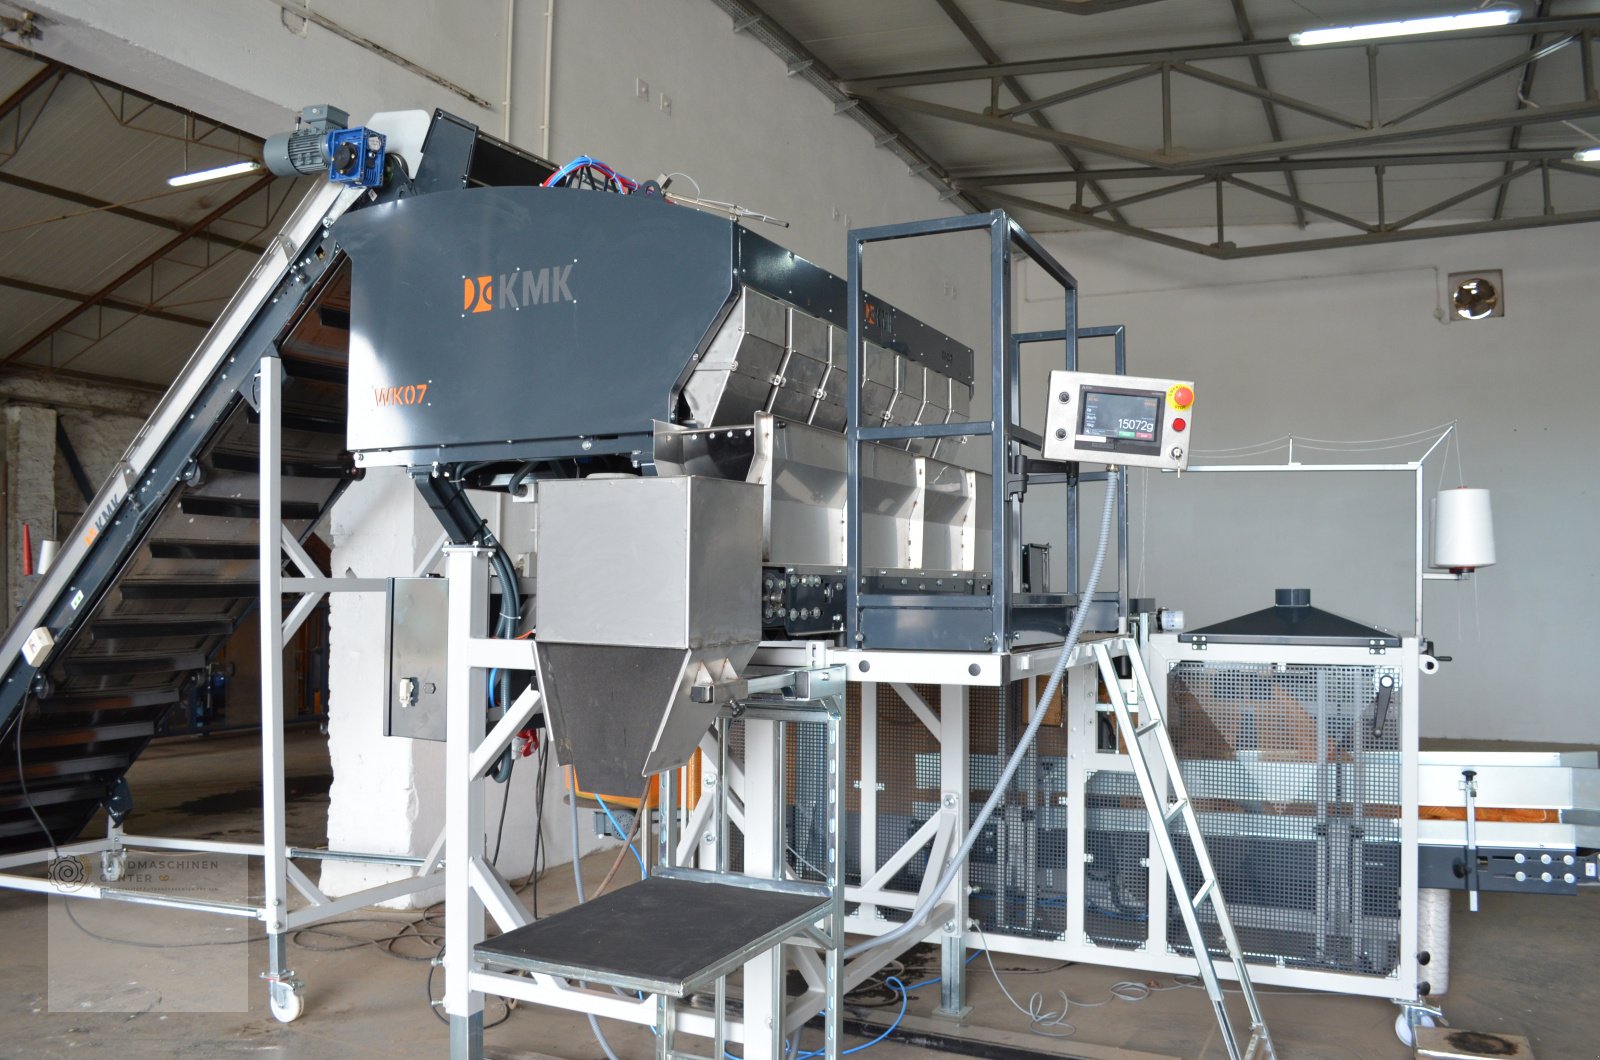 Kartoffellagerungstechnik des Typs KMK WK 07 Rinnenwaage, Neumaschine in Neuenkirchen (Bild 2)